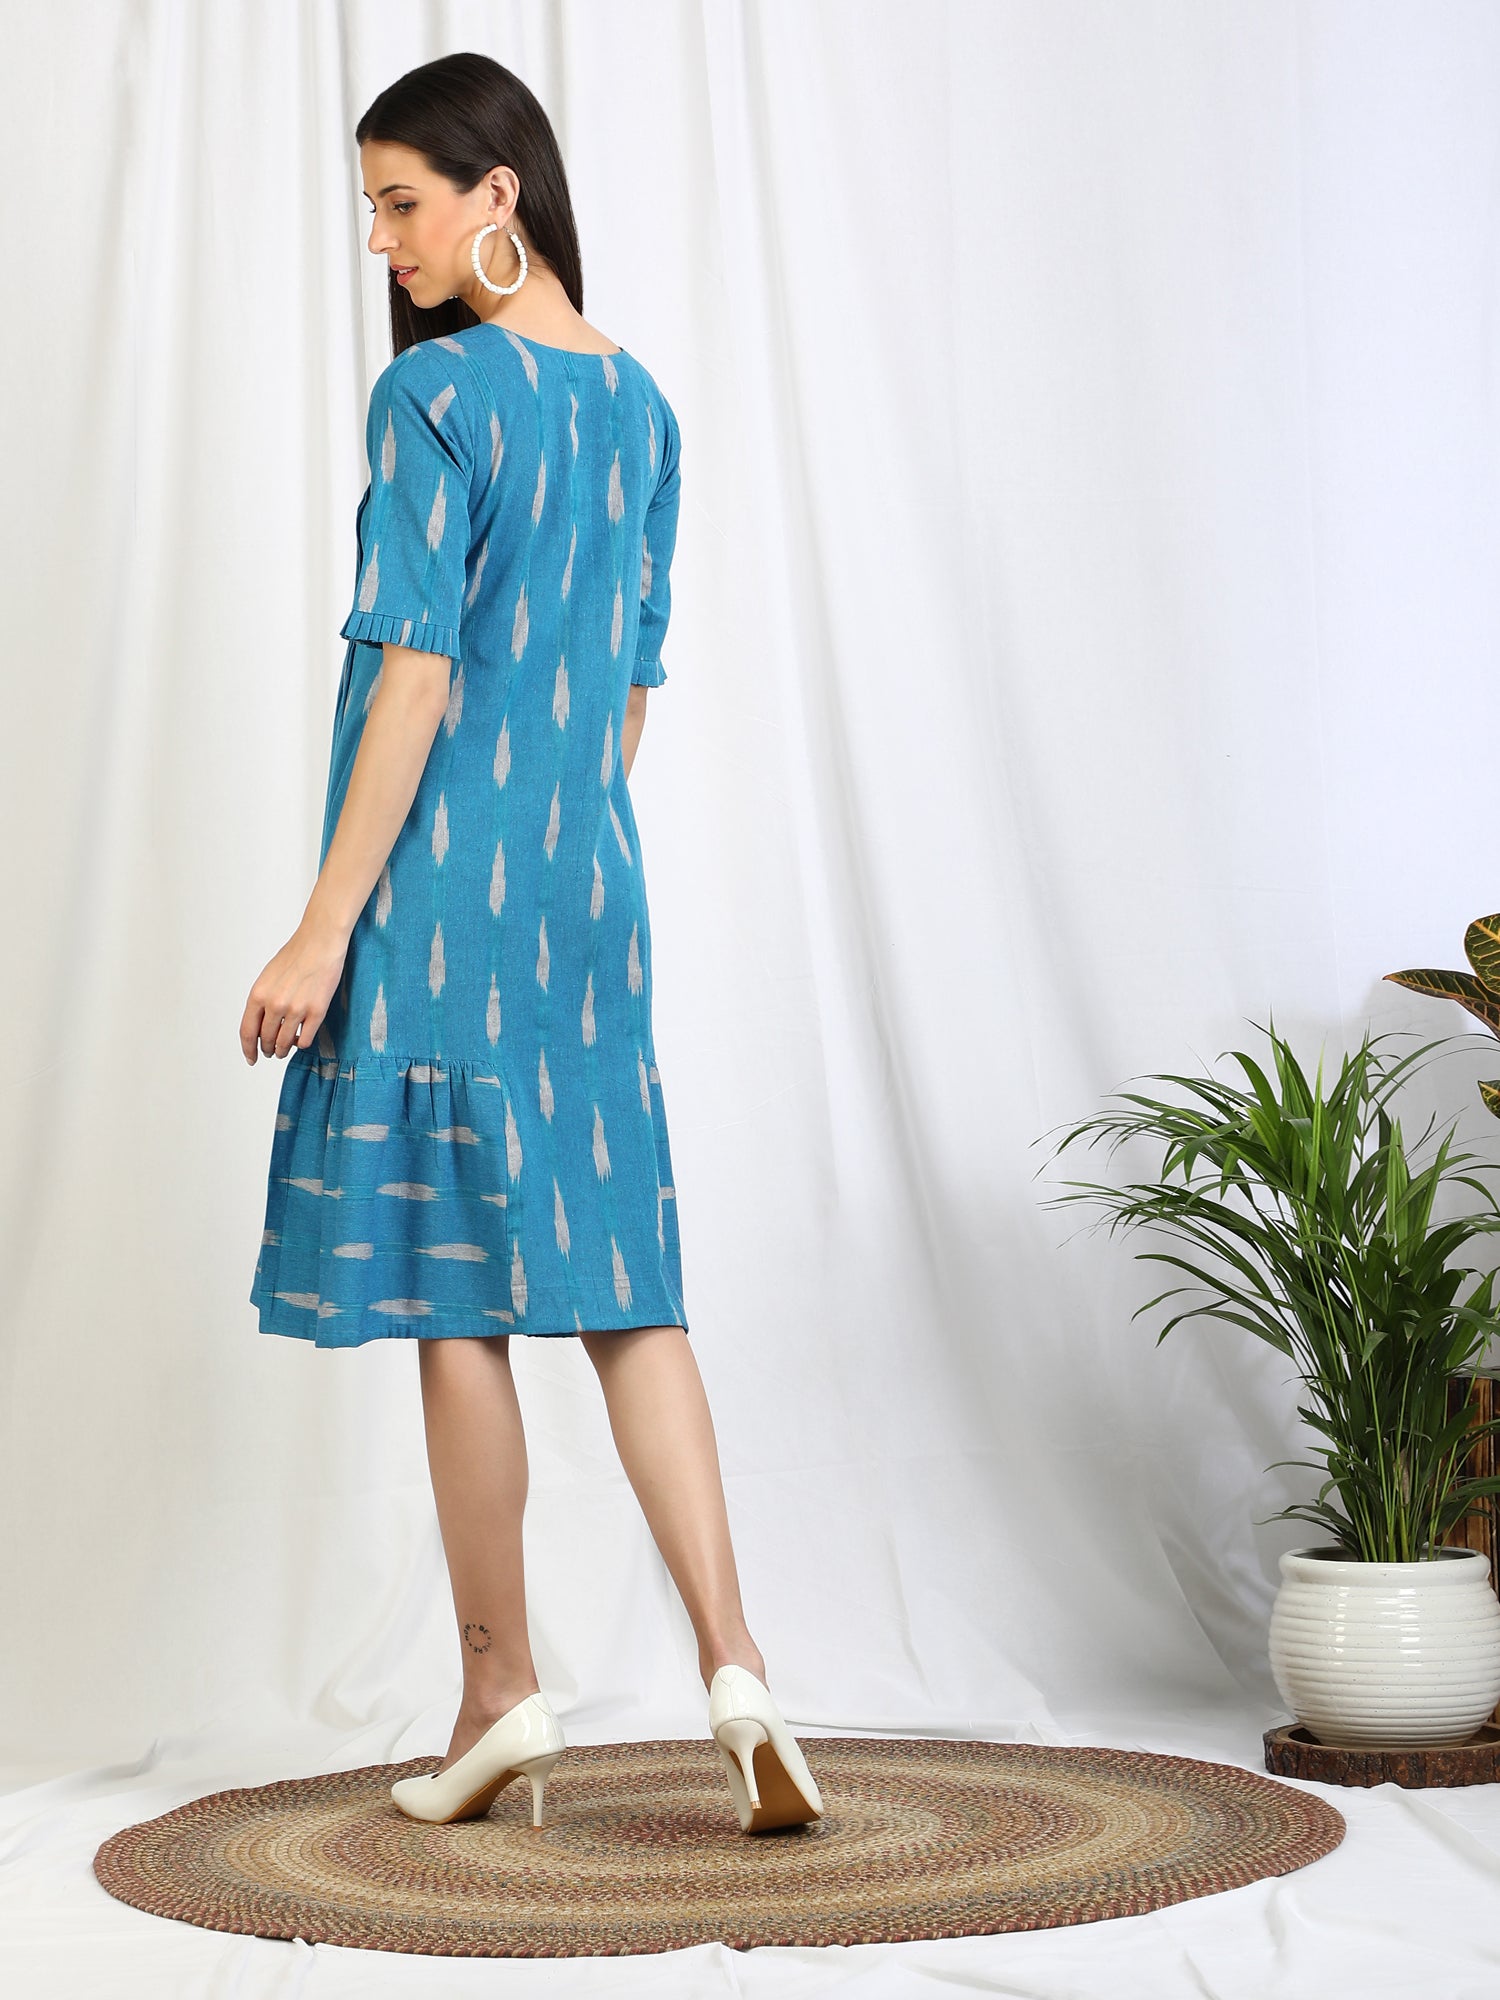 UNIBLISS Women's Cotton Skater Knee Length Dress | One piece dress design,  One piece dress knee length, Knee length dress